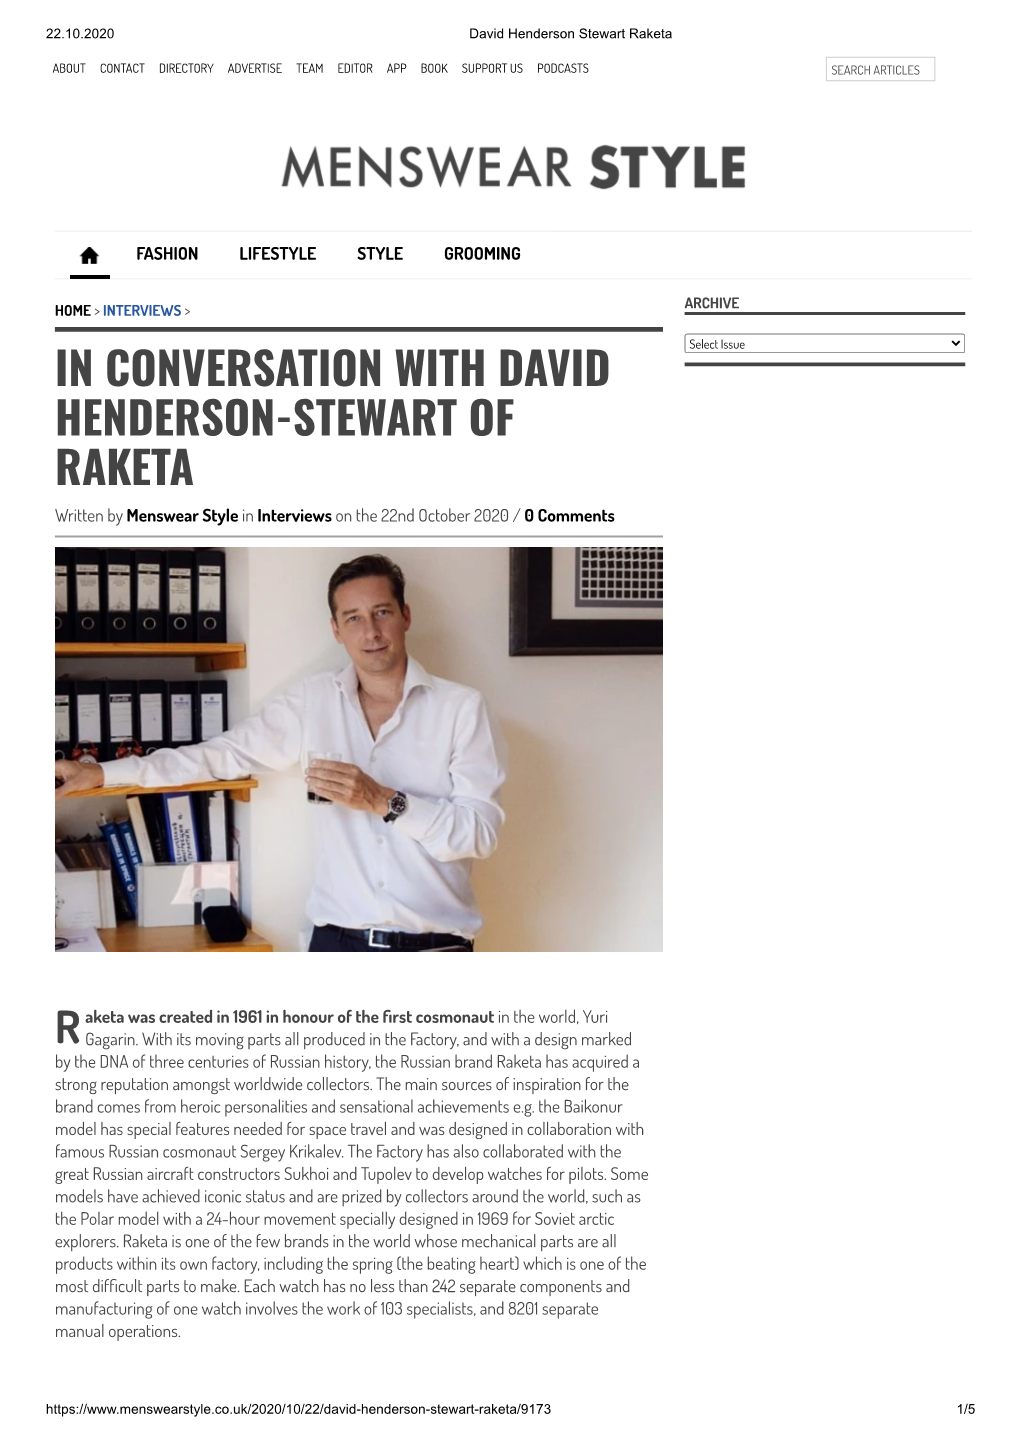 In Conversation with David Henderson-Stewart